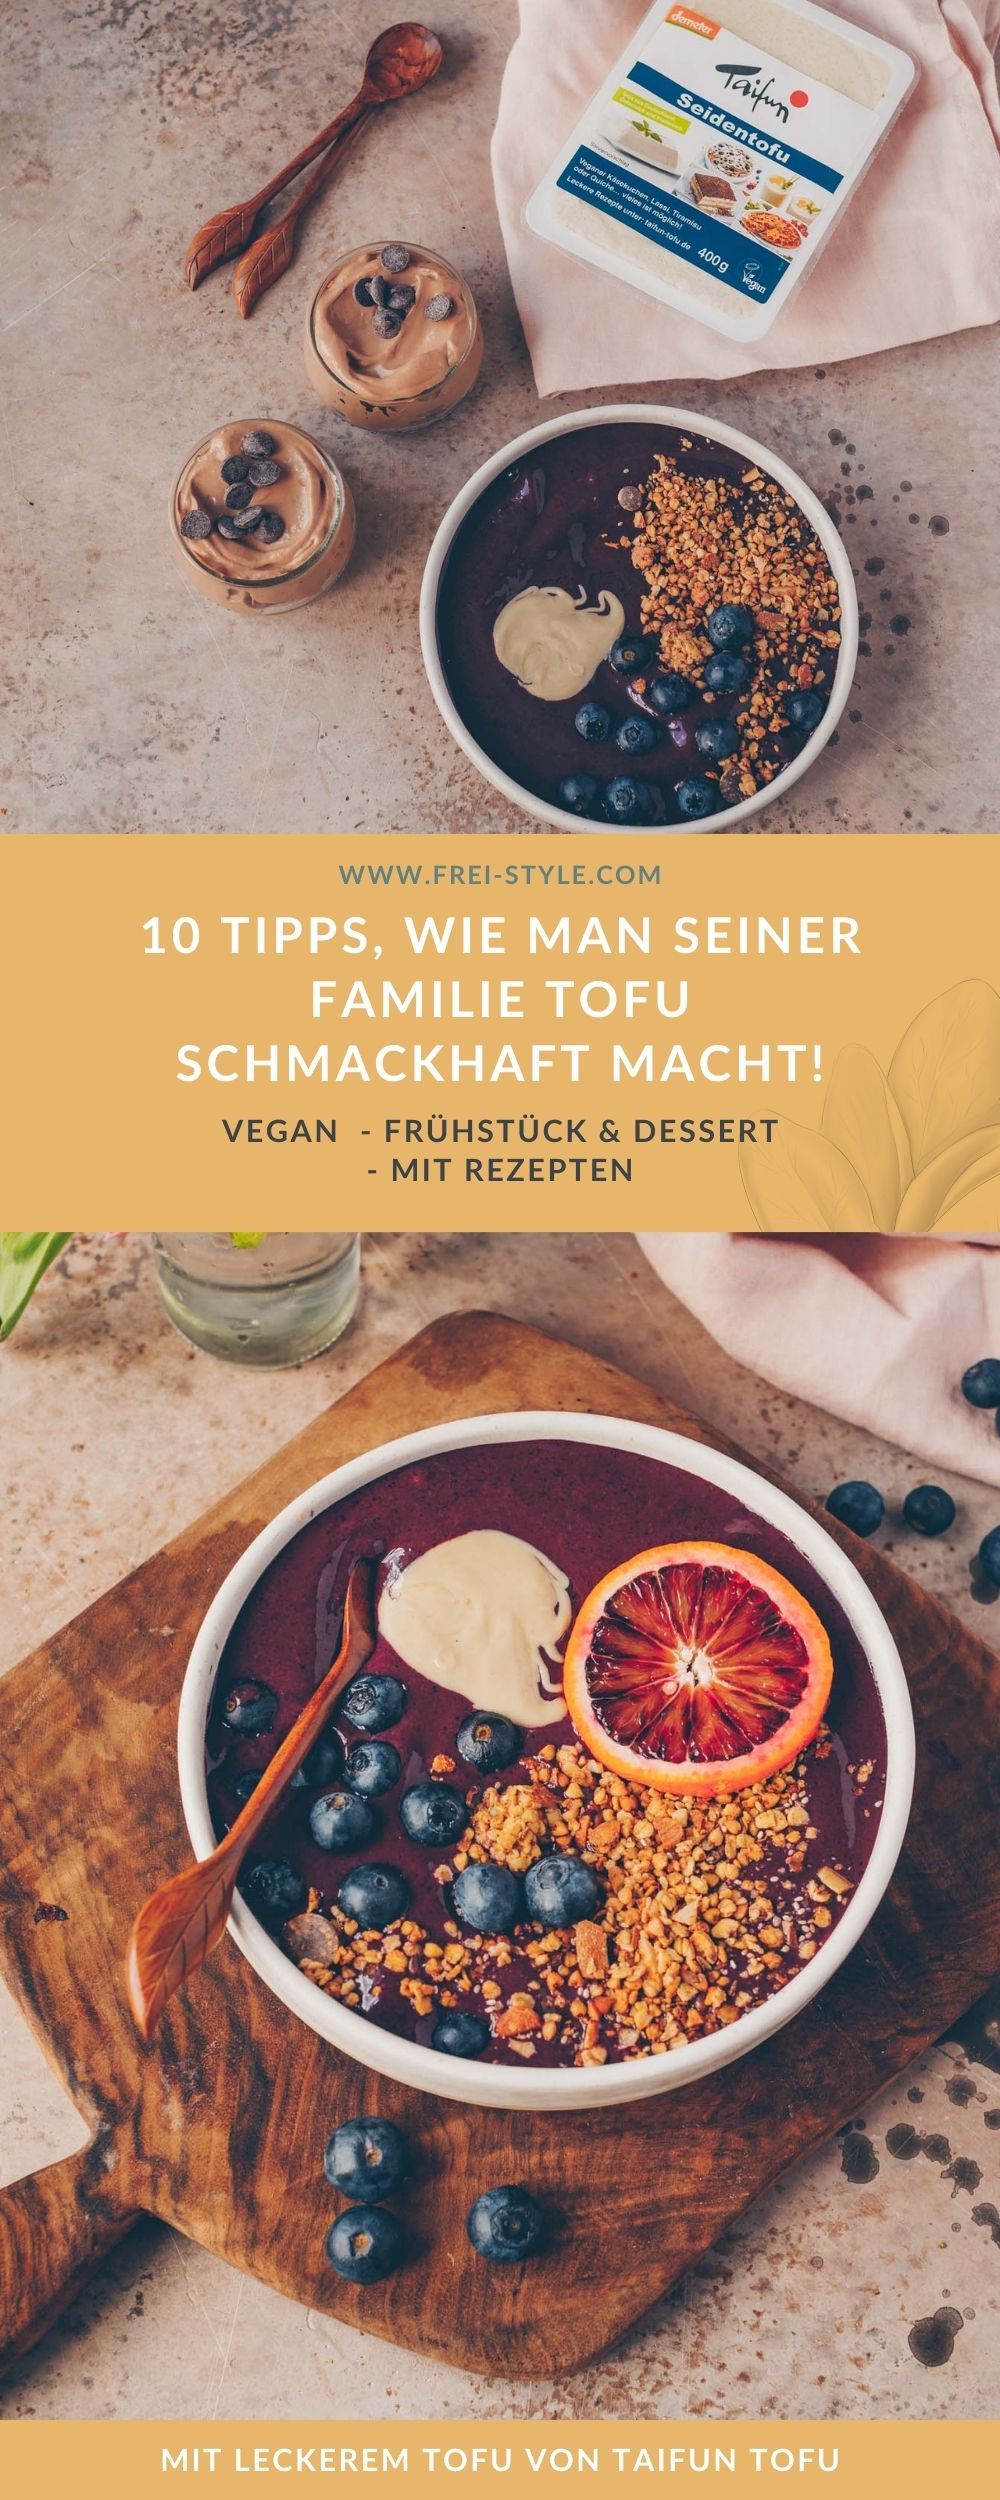 10 TIPPS, WIE MAN SEINER FAMILIE TOFU SCHMACKHAFT MACHT!